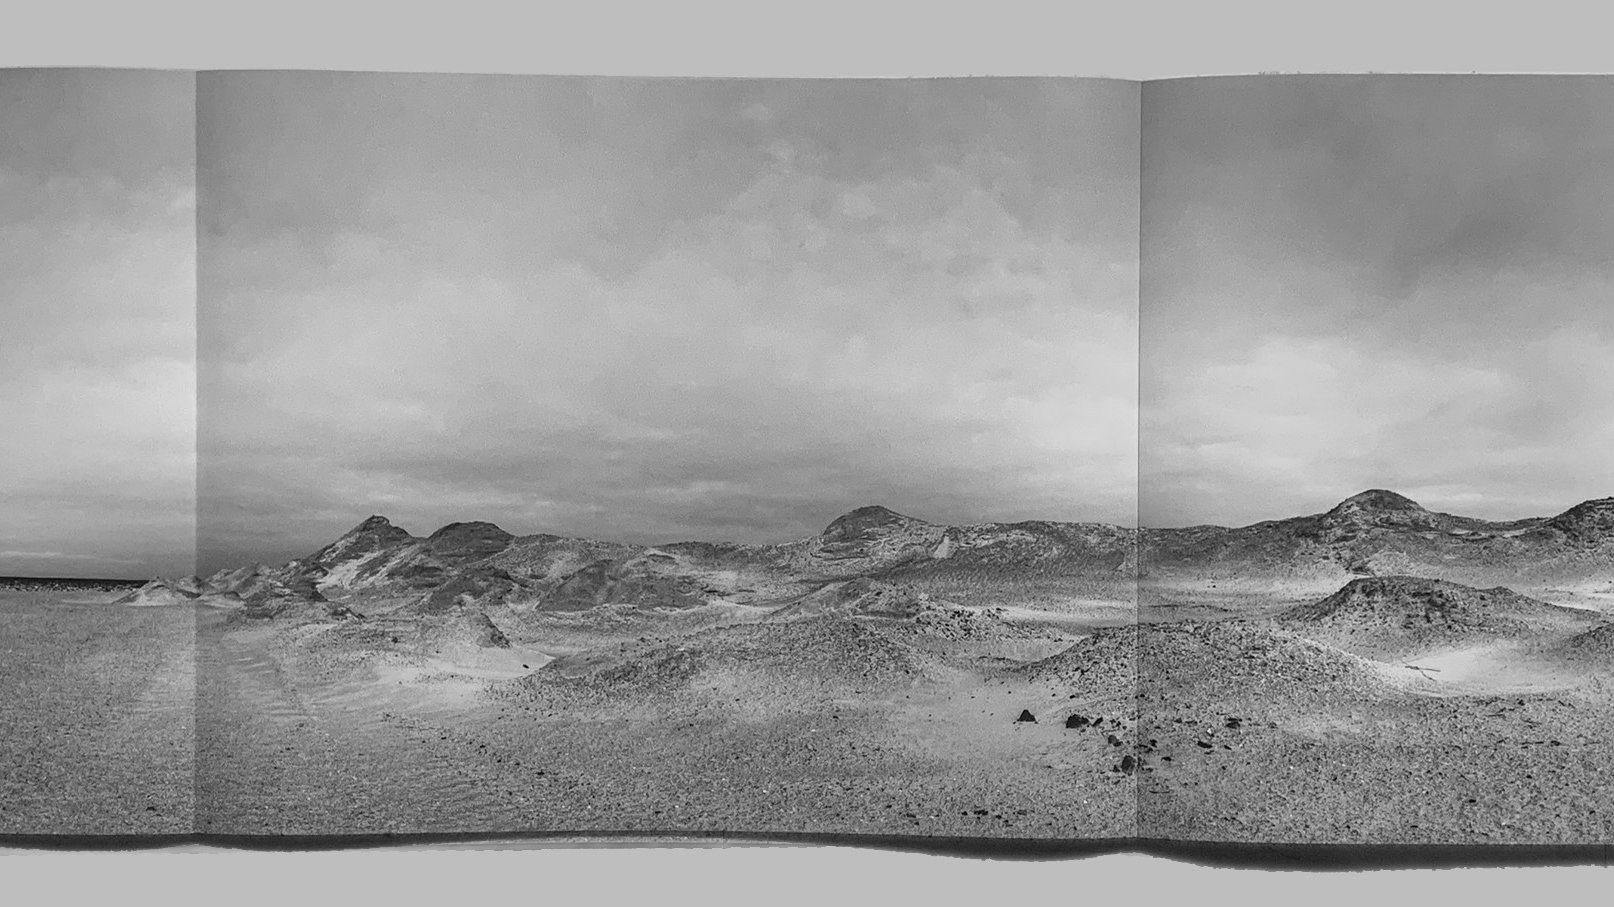 Inkijkje in het boek Time and Tide wait for no man met panoramafoto's